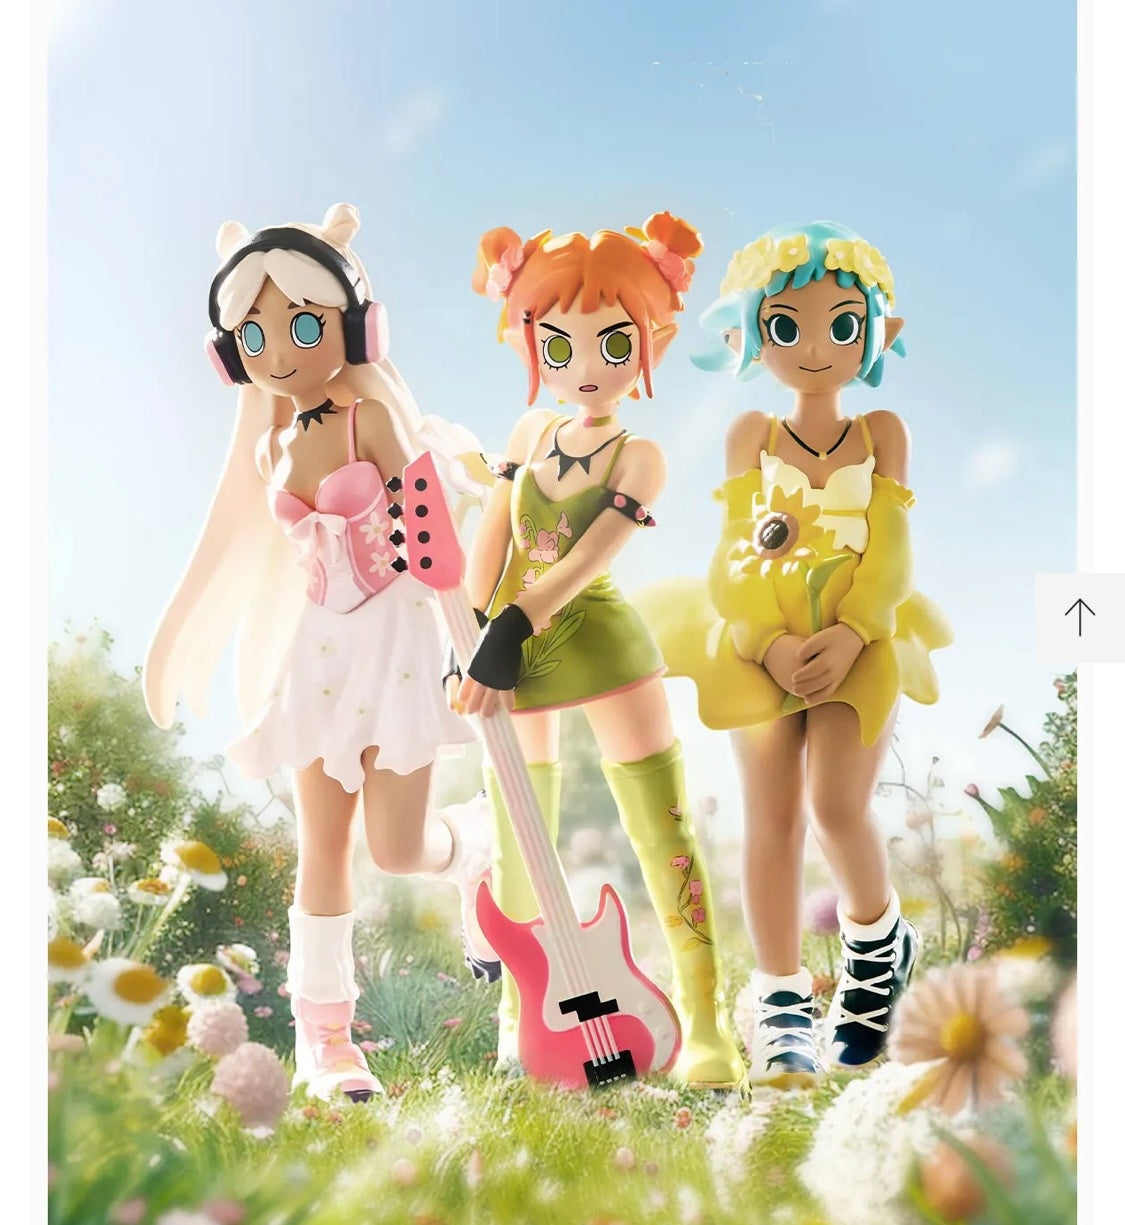 Peach Riot Punk Fairy Series Figures（Whole box)